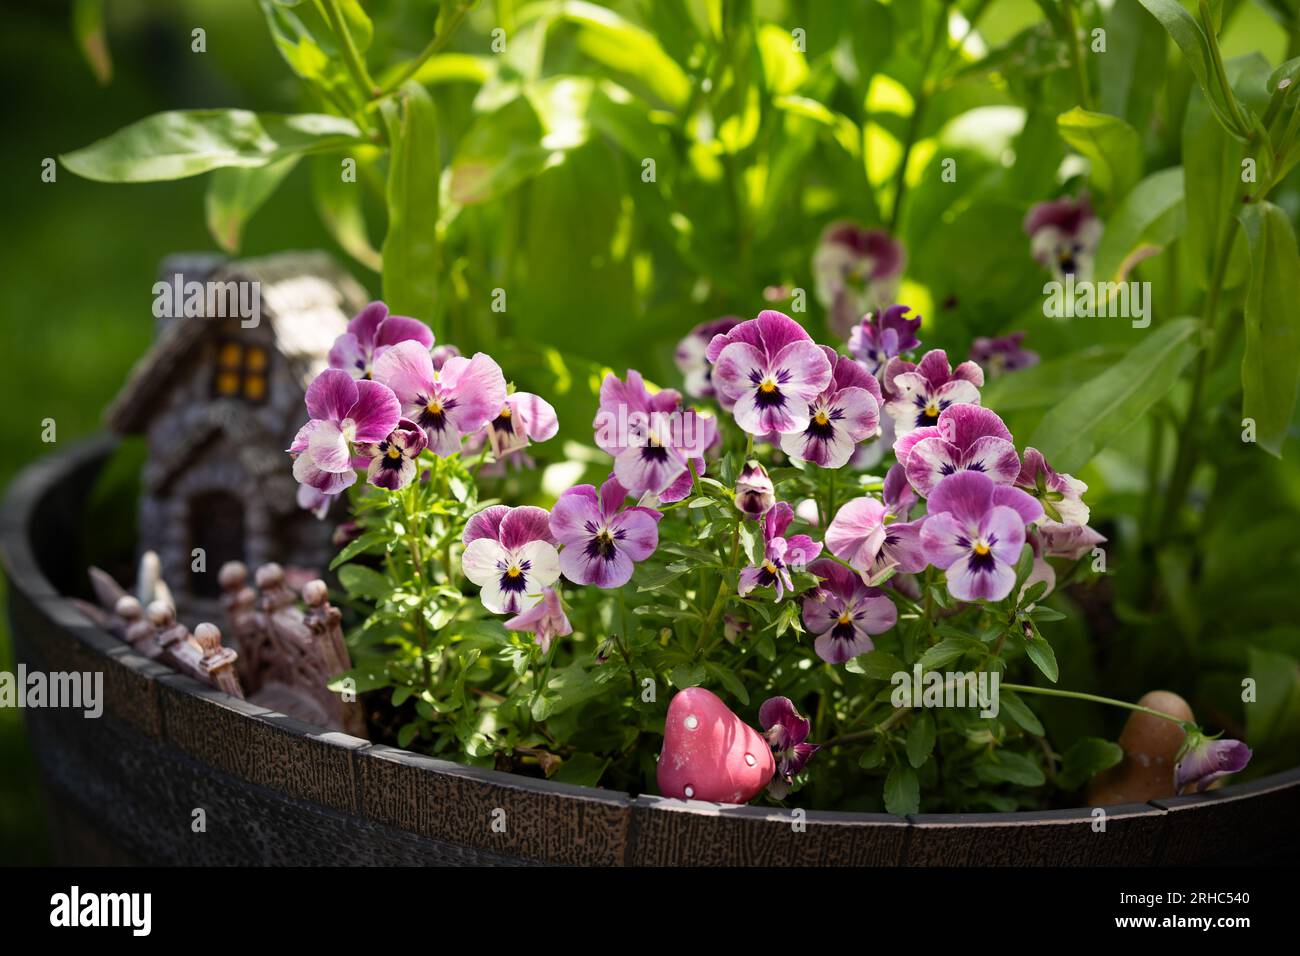 Violas planted in a fairy garden Stock Photo